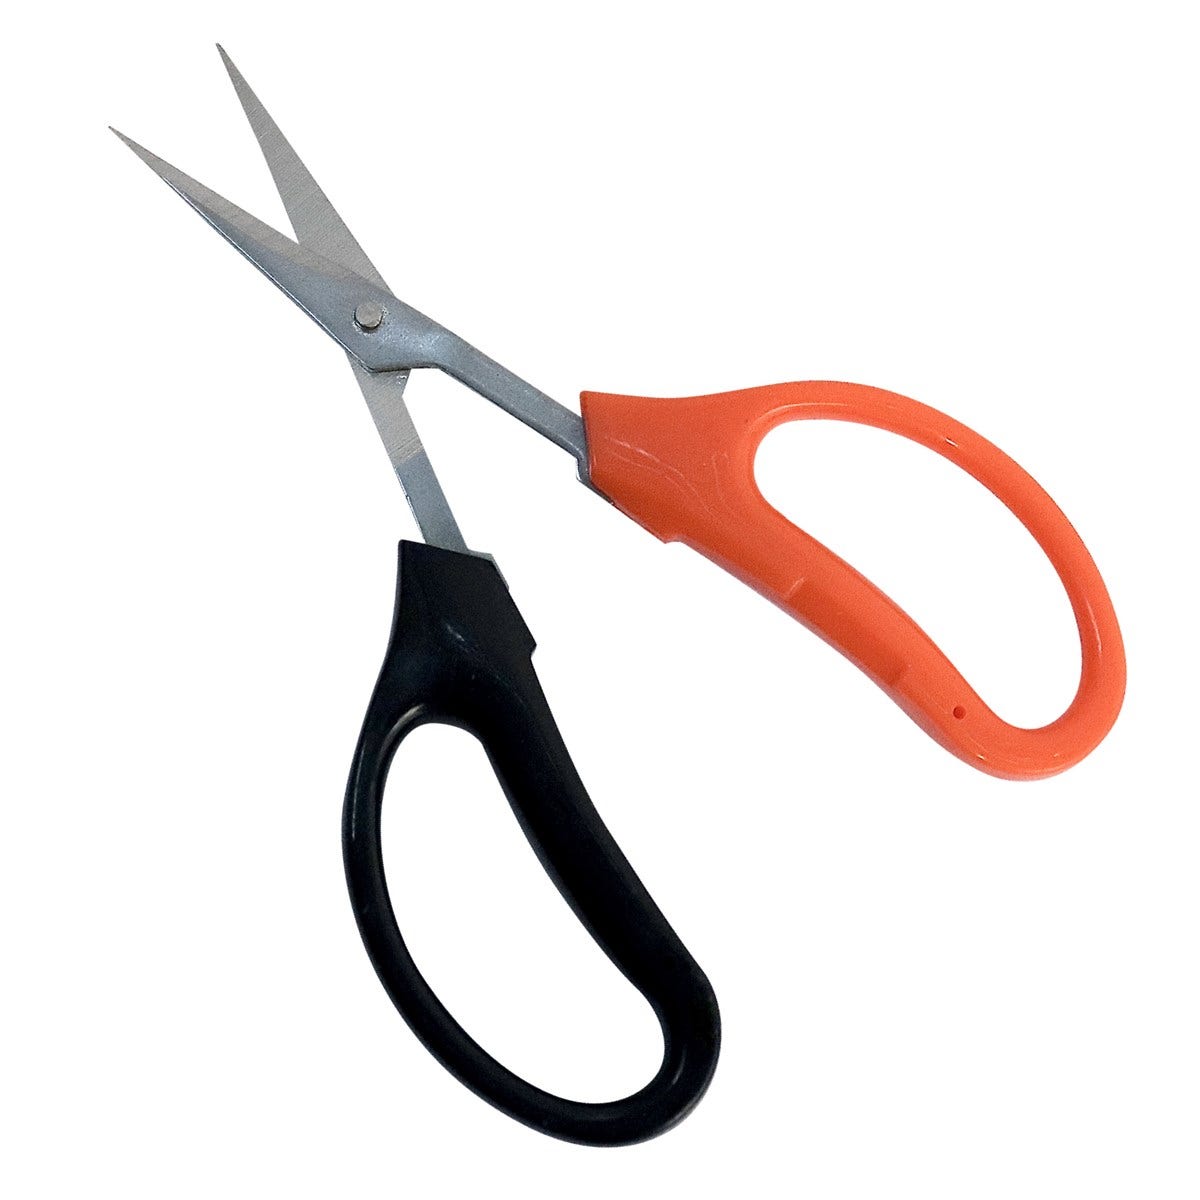 Grow Tools Quick Snips Scissors